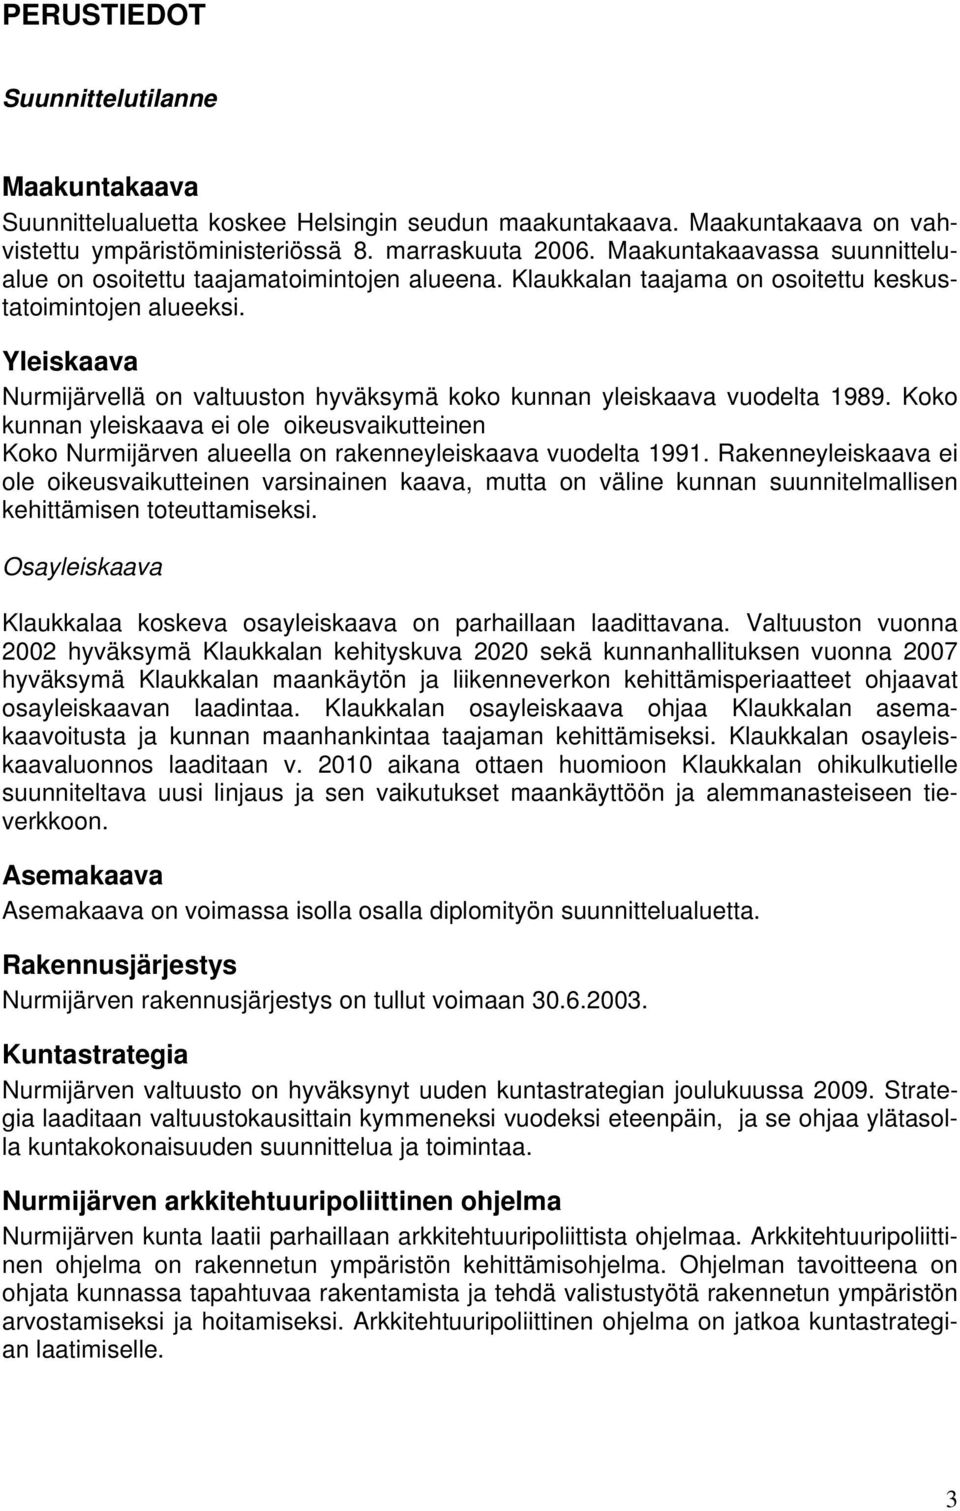 Yleiskaava Nurmijärvellä on valtuuston hyväksymä koko kunnan yleiskaava vuodelta 1989. Koko kunnan yleiskaava ei ole oikeusvaikutteinen Koko Nurmijärven alueella on rakenneyleiskaava vuodelta 1991.